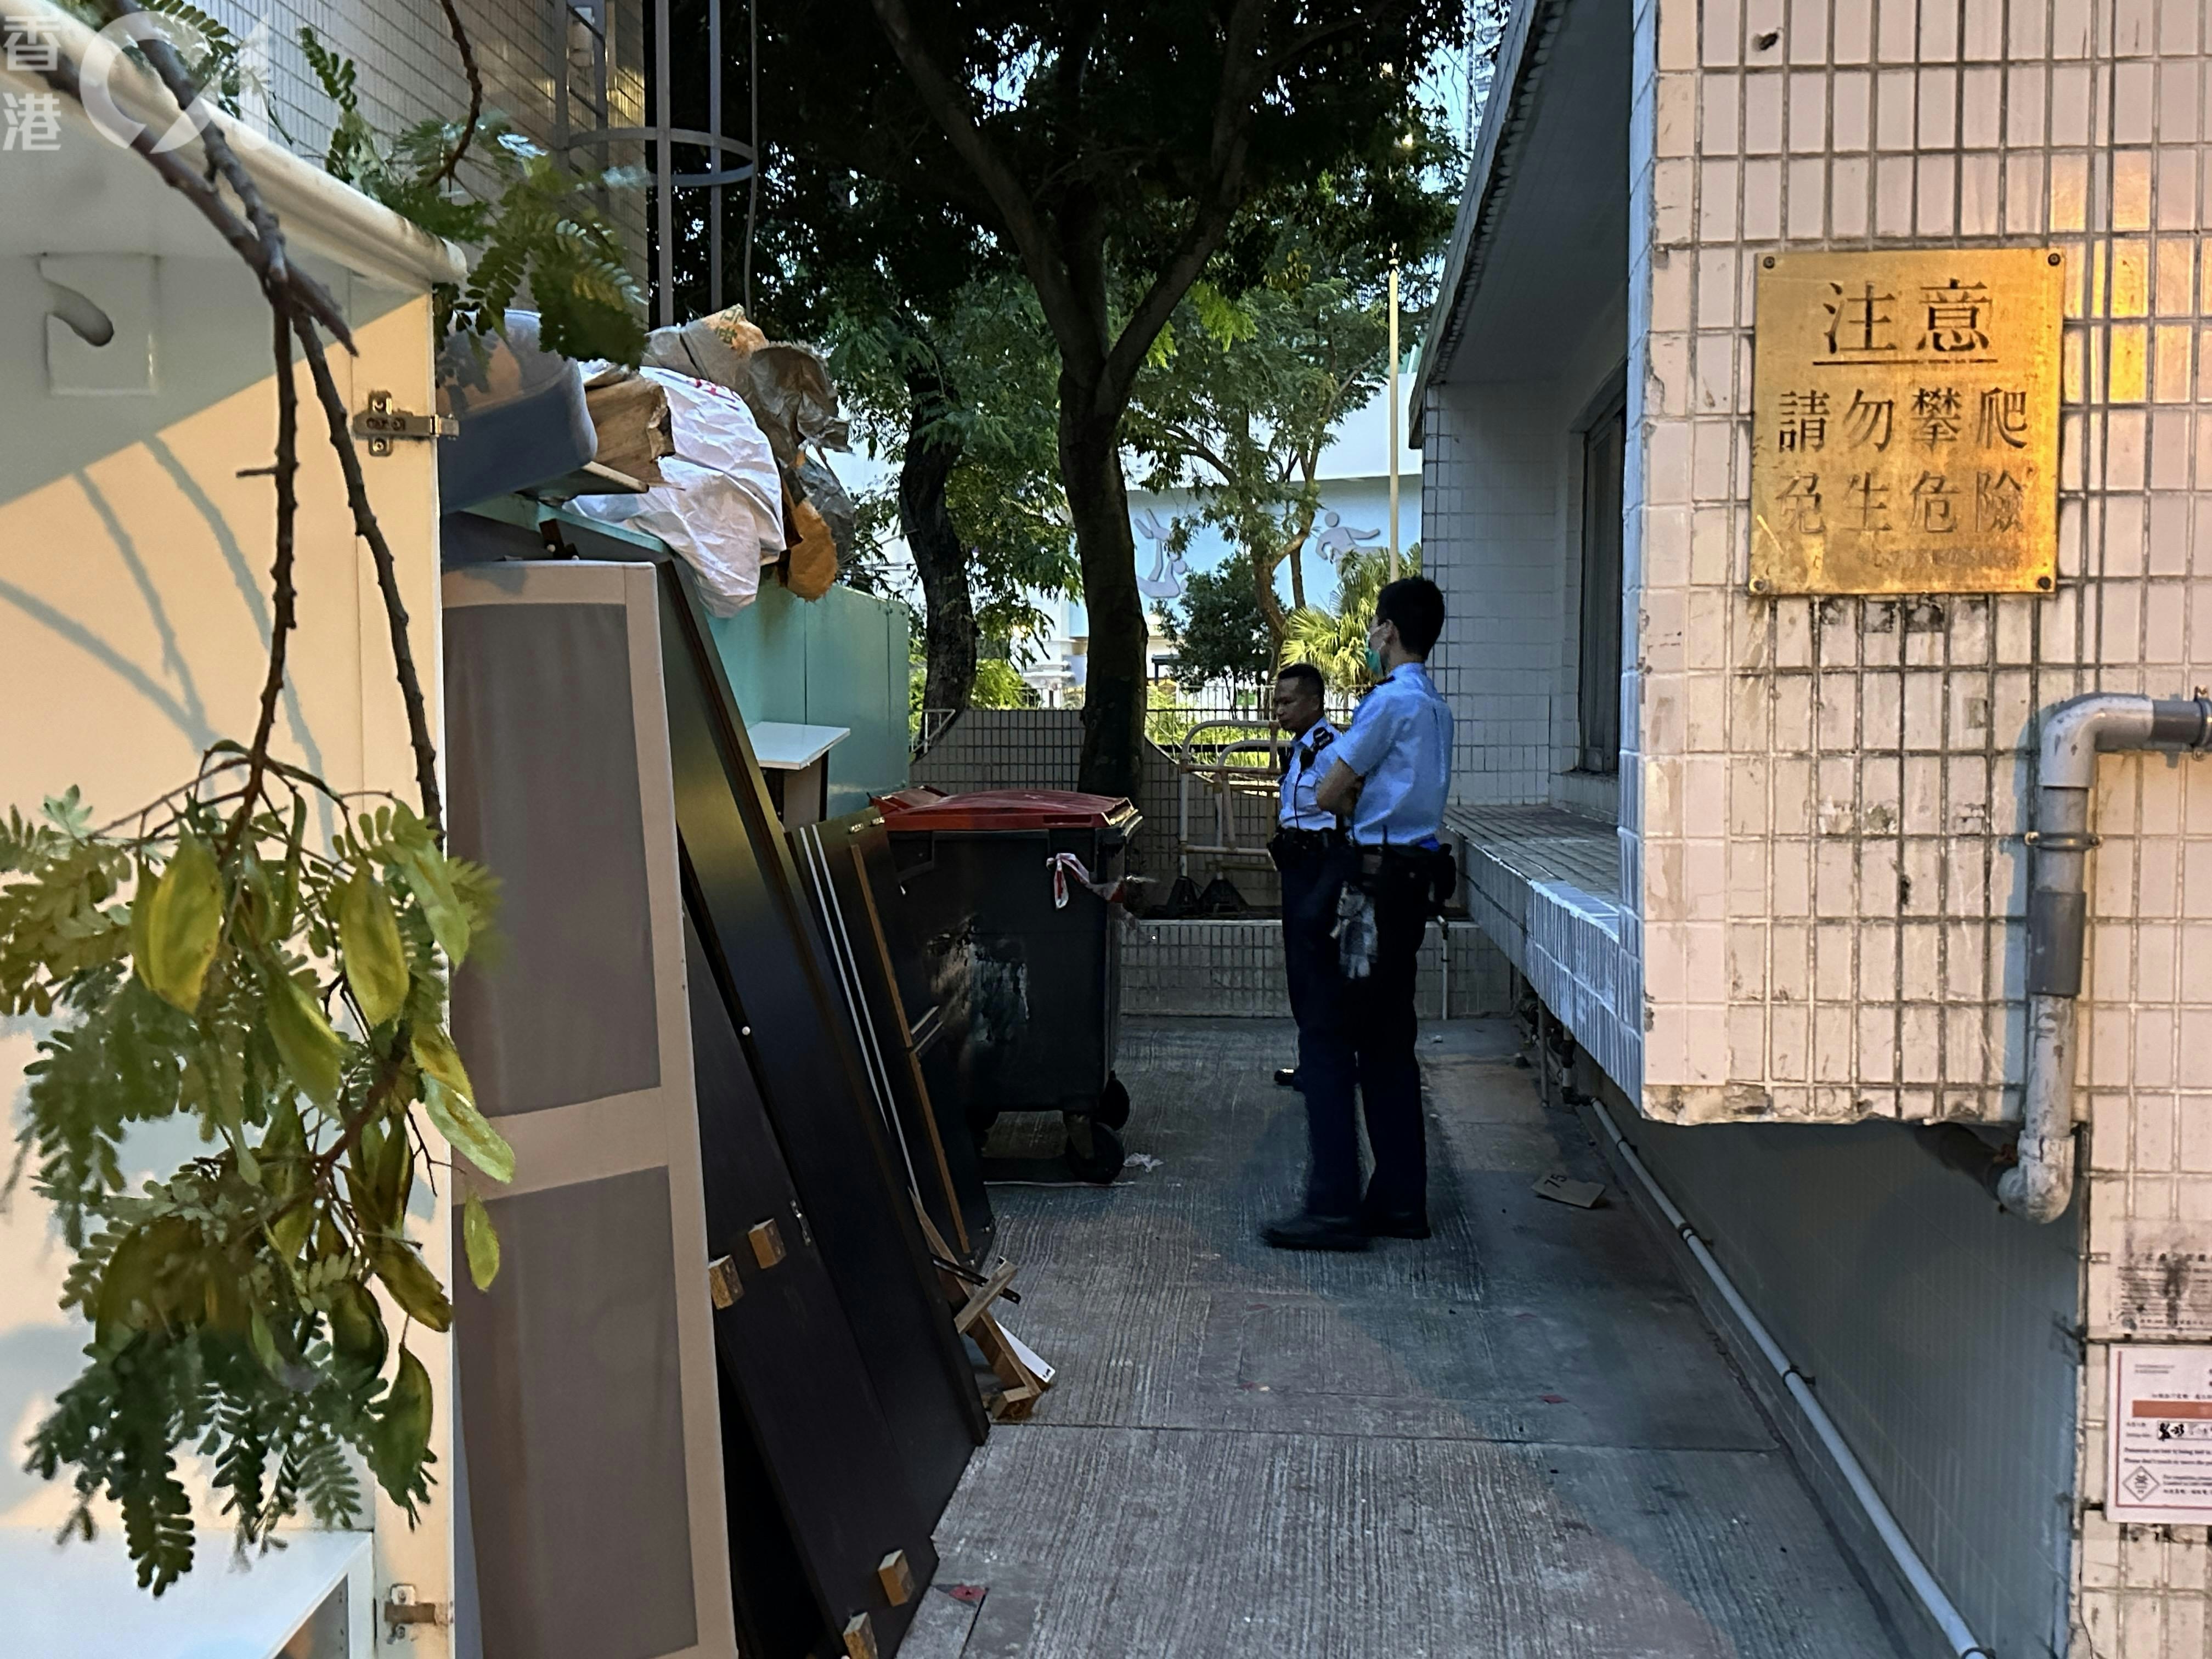 粉岭华心邨华勉楼发生命案，警员看守大厦旁一个垃圾场。（王译扬摄）